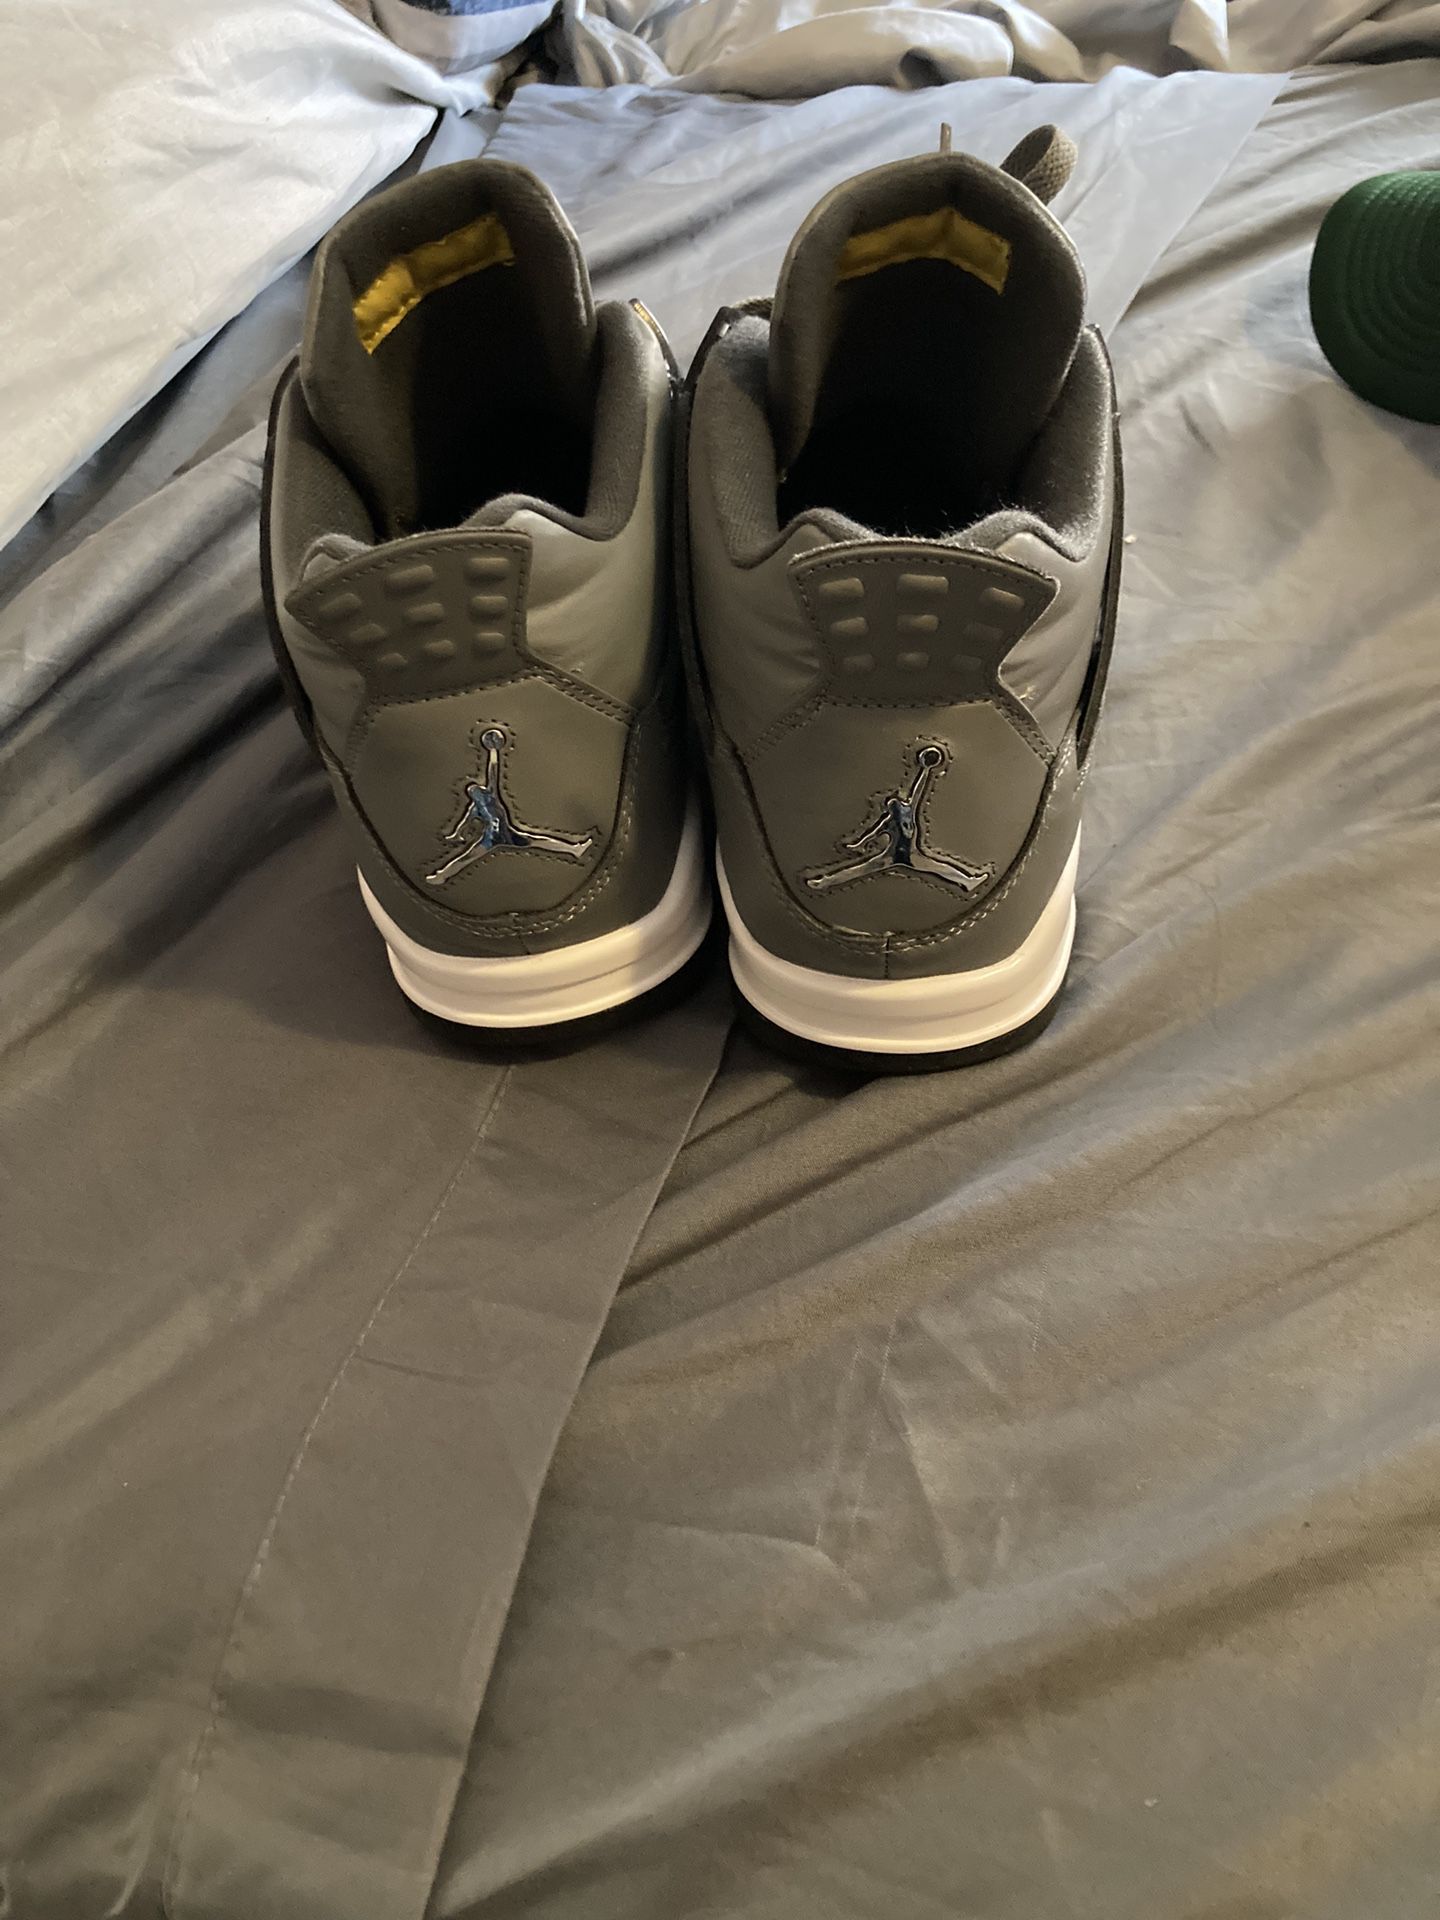 Cool Grey Jordan’s 